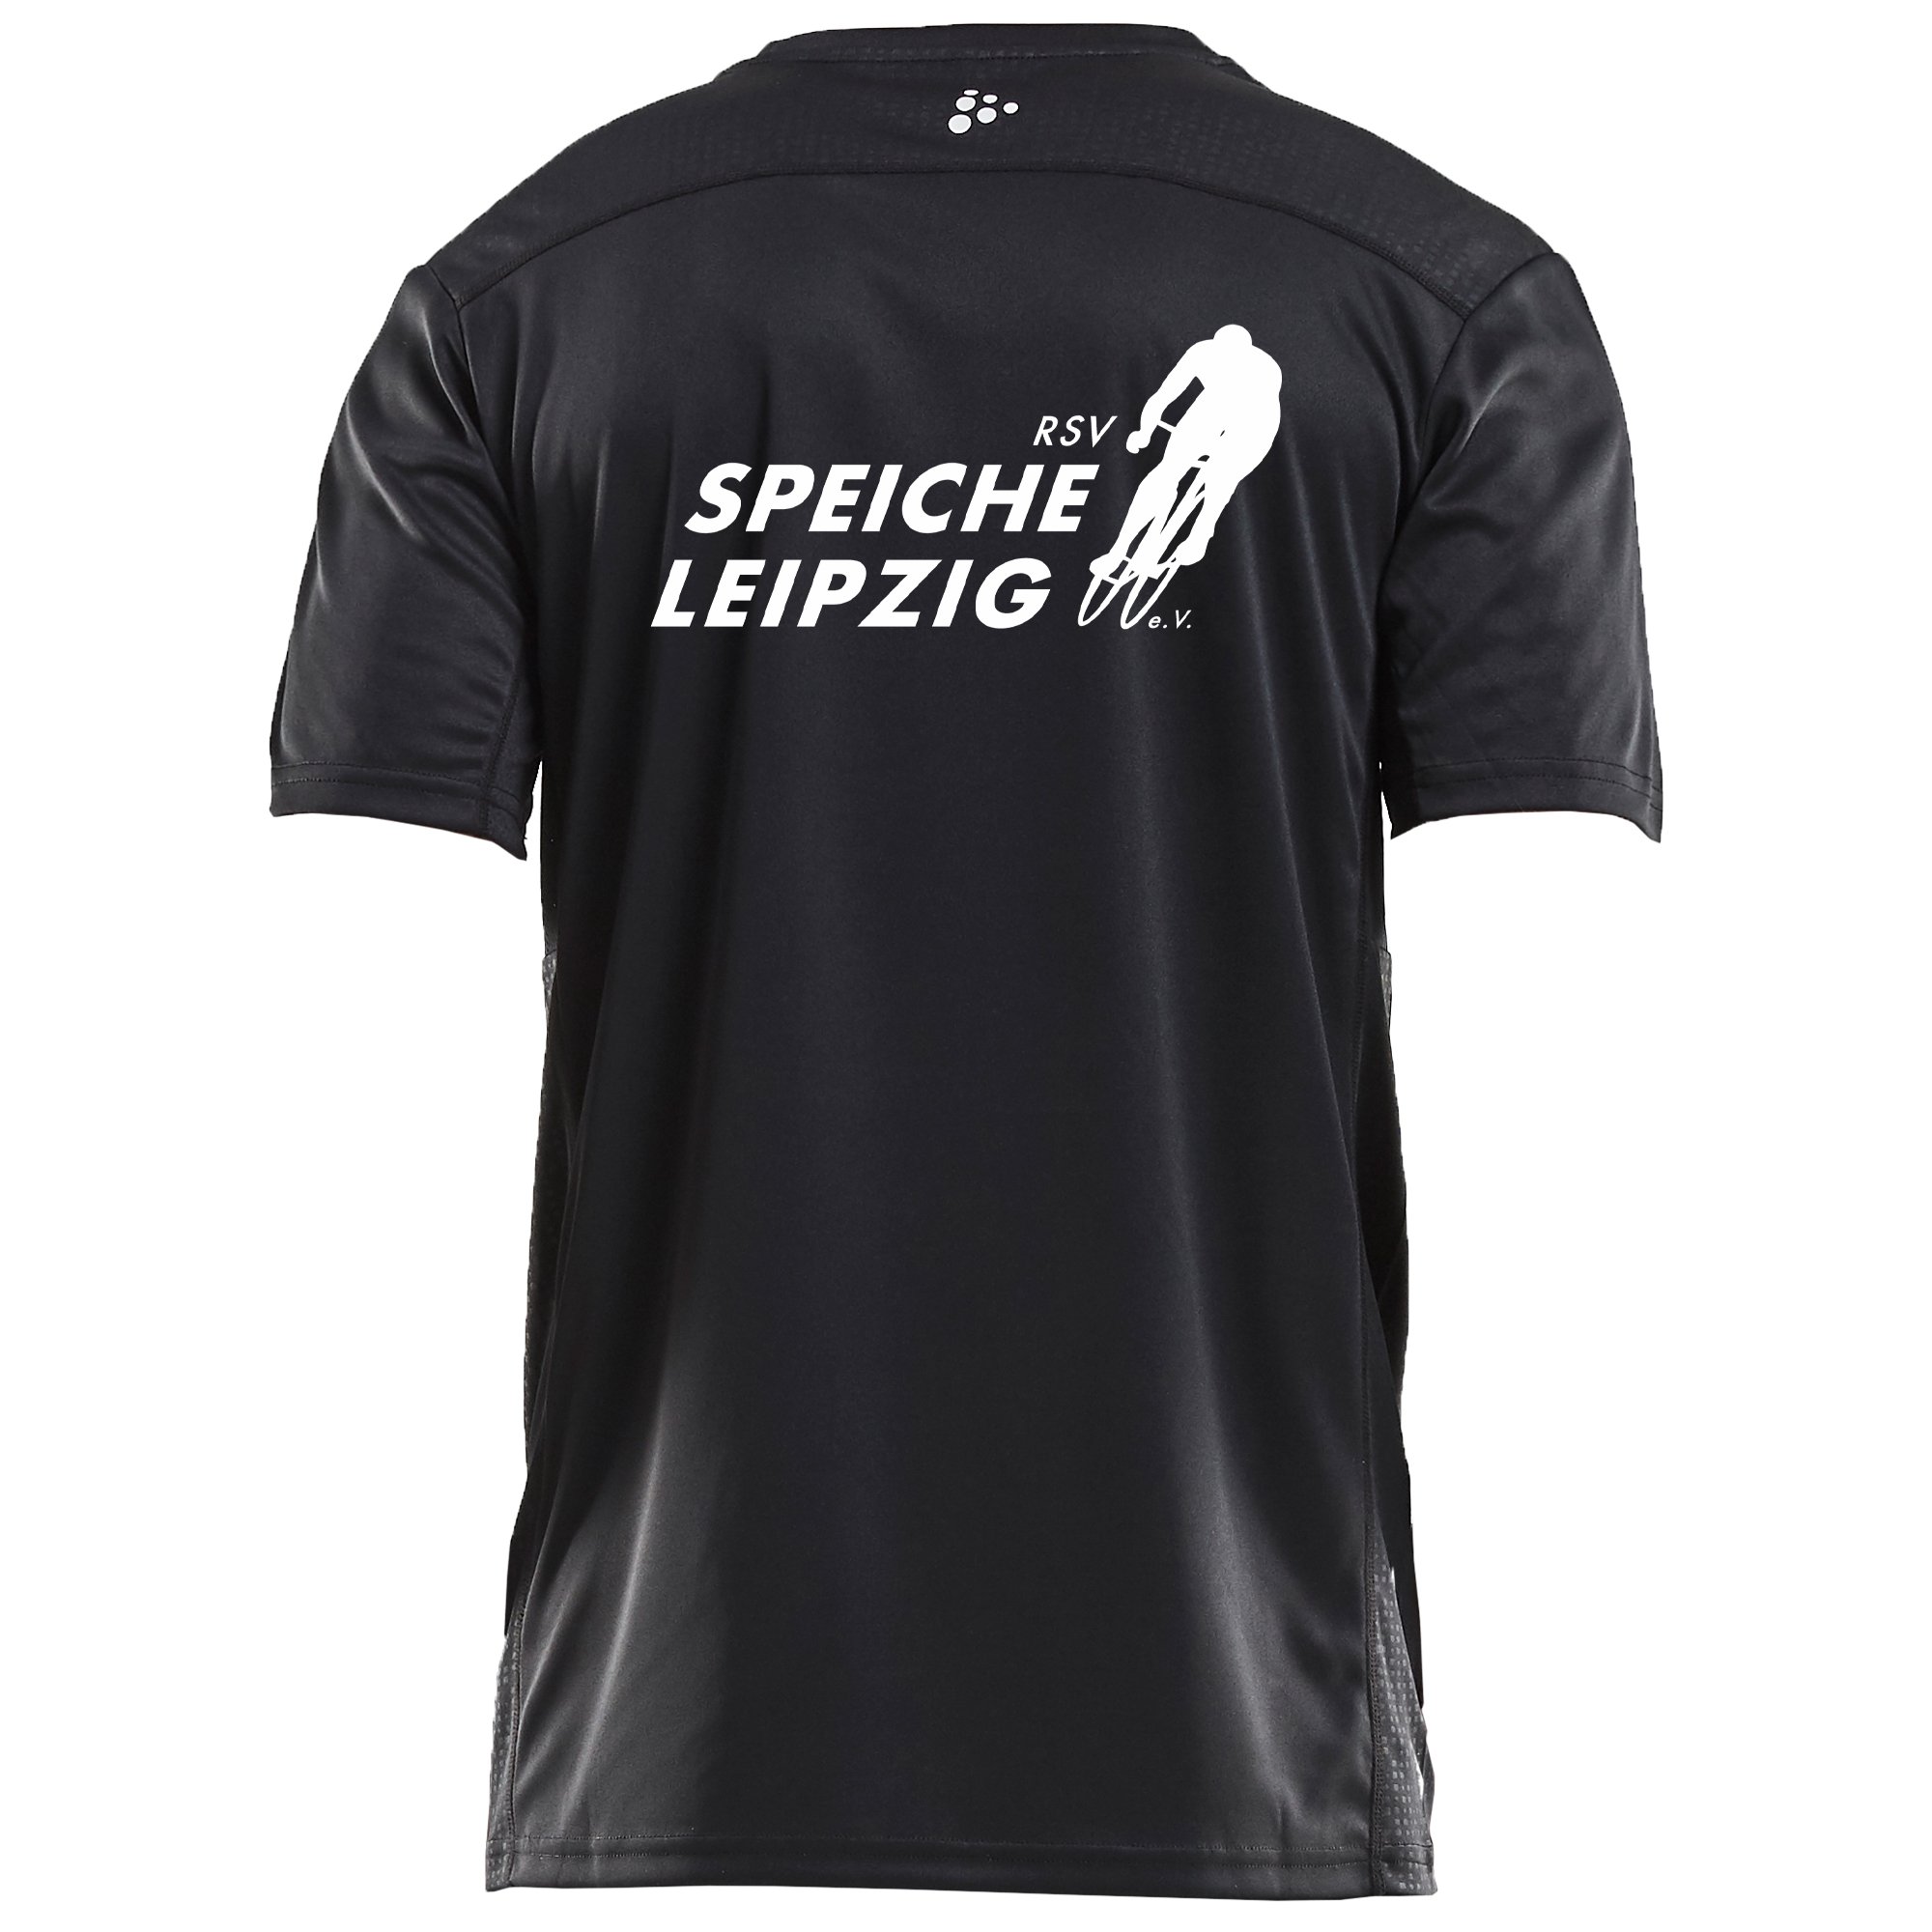 RSV Speiche T-Shirt